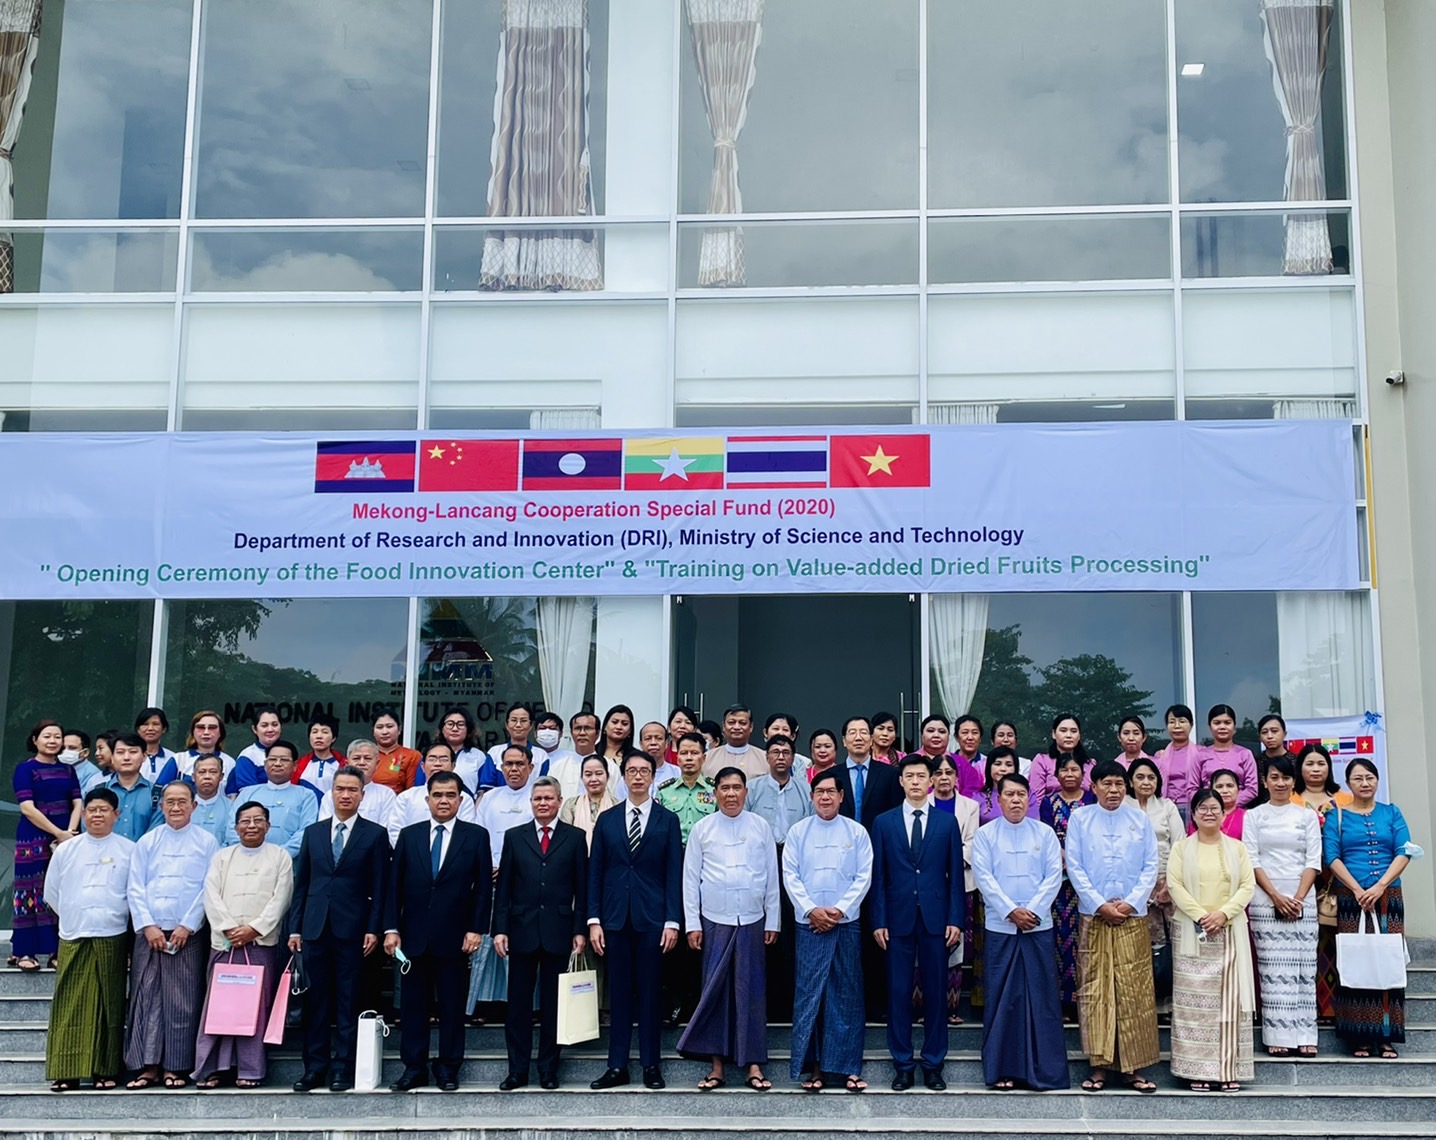 การเข้าร่วมพิธีเปิดศูนย์นวัตกรรมด้านอาหารและการฝึกอบรมการอบแห้งผลไม้เพื่อสร้างมูลค่าเพิ่ม ภายใต้กองทุน Mekong-Lancang Cooperation Special Fund (2020)